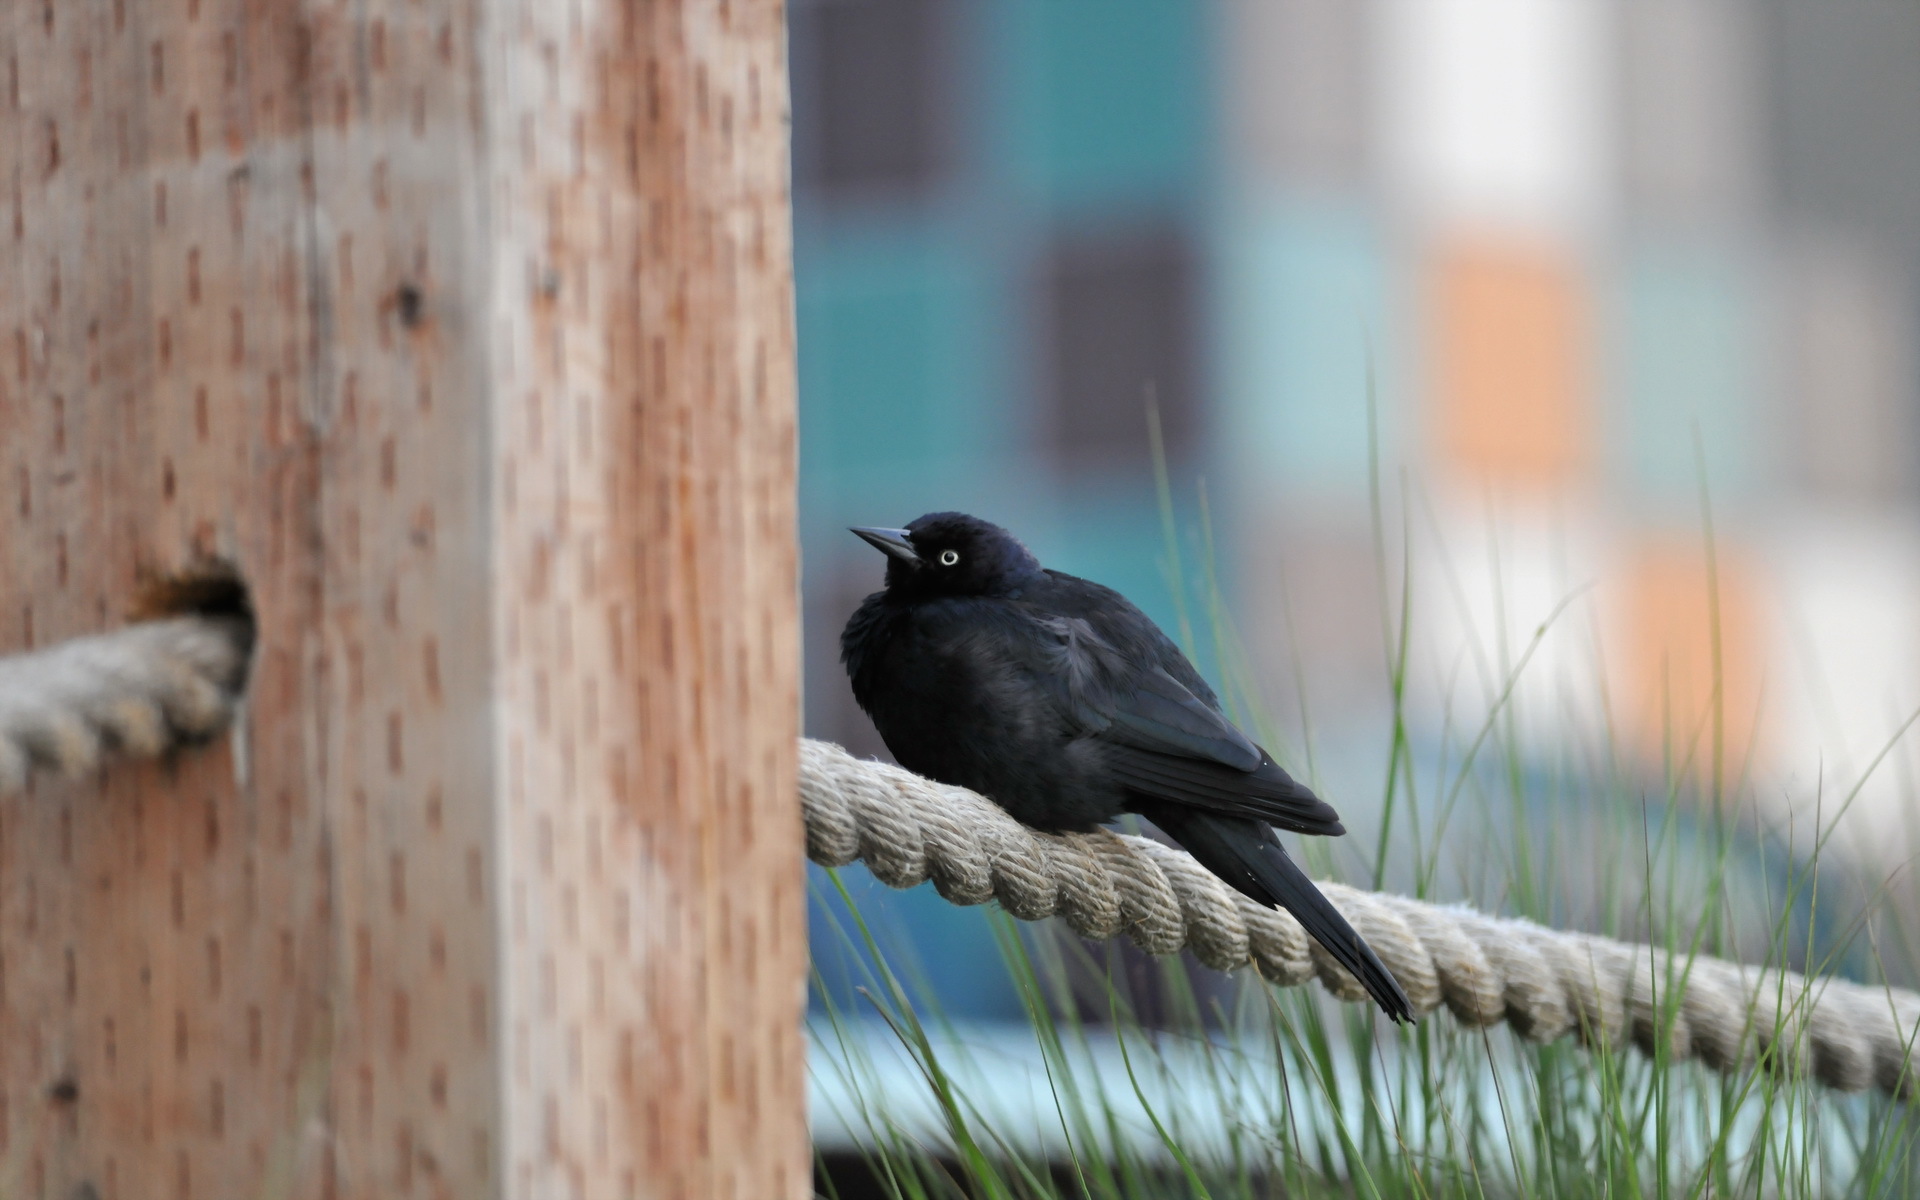 Птица сидит на знаке. Птица на заборе. Птичка сидит на изгороди. Птица сидит на заборе. Чёрные птицы на перилах.